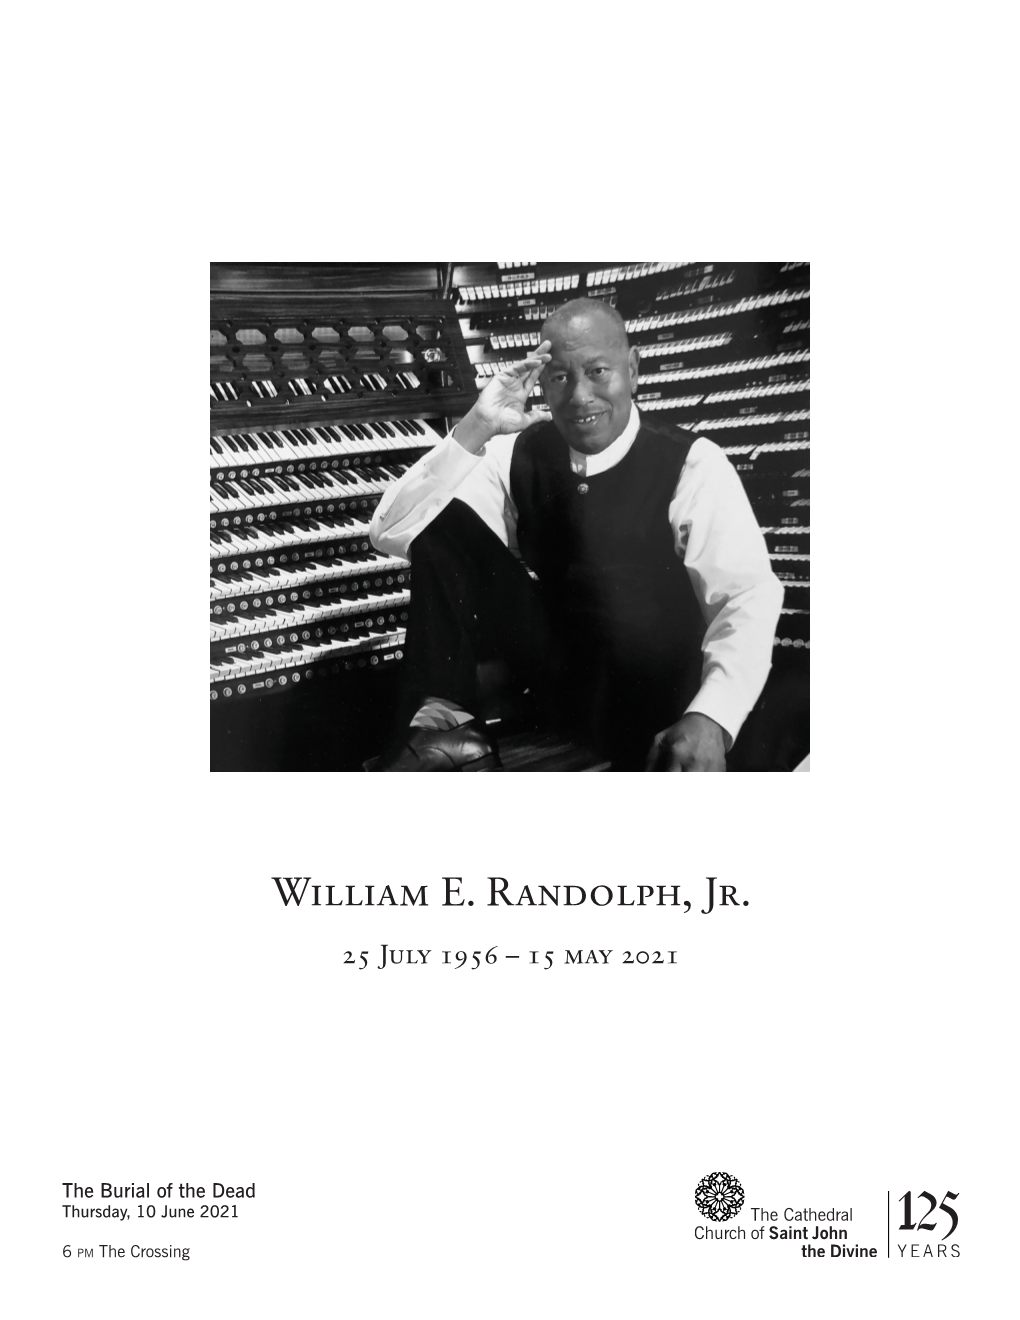 William E. Randolph, Jr